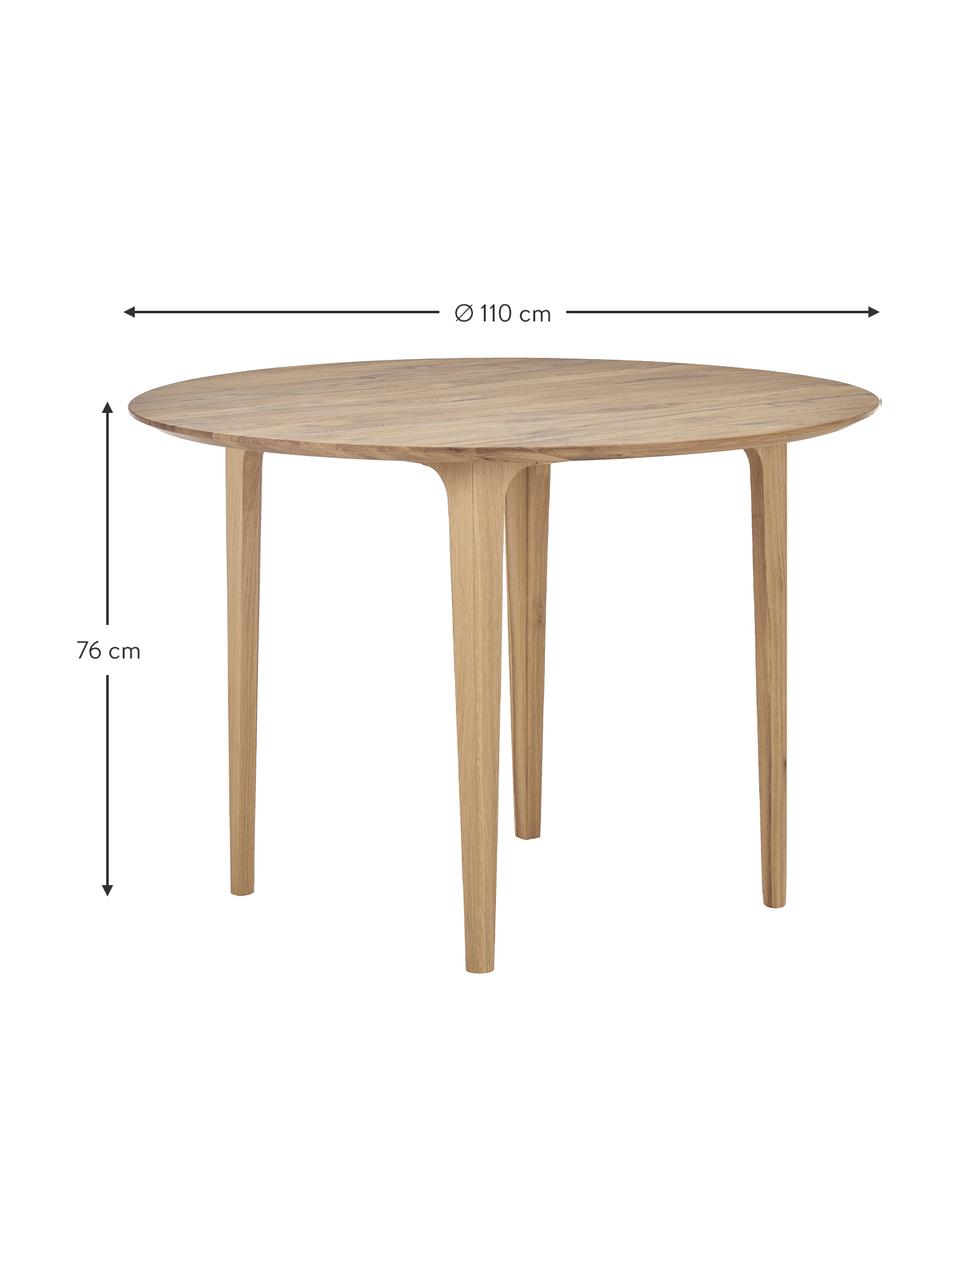 Kulatý jídelní stůl z masivního dubového dřeva Archie, Ø 110 cm, Masivní dubové dřevo, olejované
100 % FSC dřevo z udržitelného lesnictví, Dubové dřevo, Ø 110 cm, V 76 cm